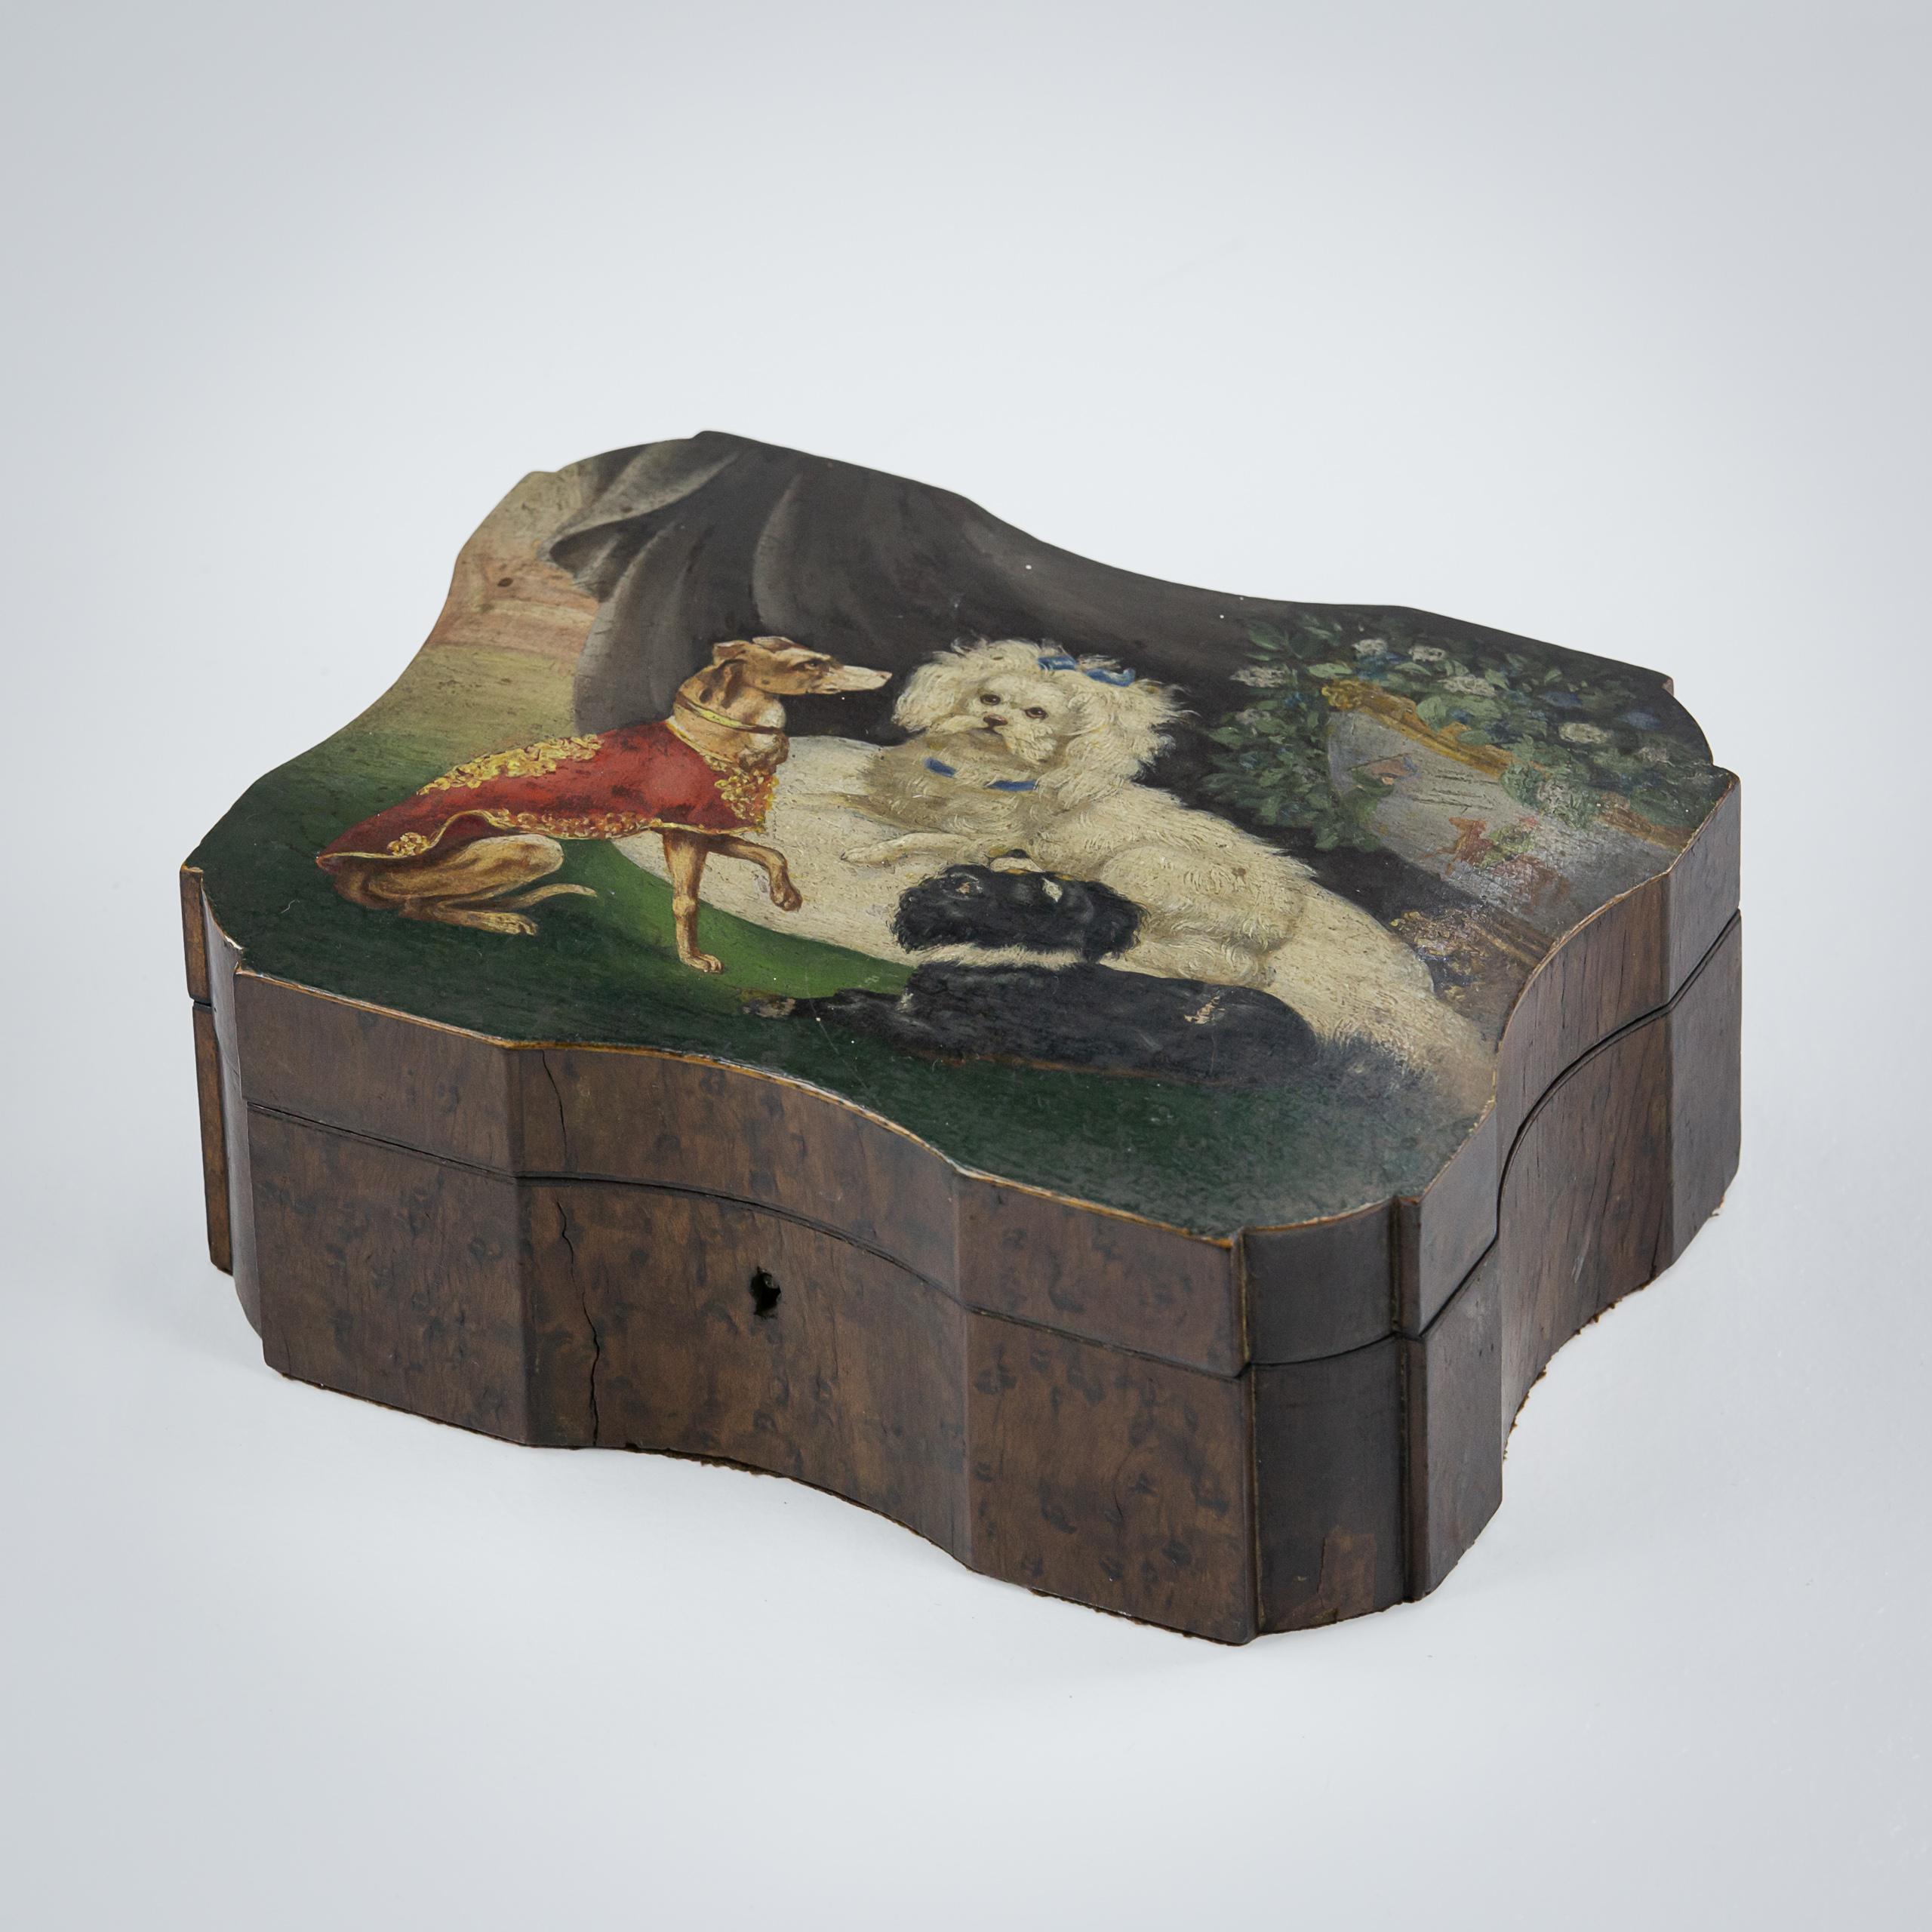 Boîte à bijoux du XIXe siècle en ronce de noyer, remarquable dessus peint de trois chiens dont le plus fier est niché dans un coussin entouré de fines draperies et d'un vase chinois débordant. Il est fort probable qu'il s'agisse d'une commission du